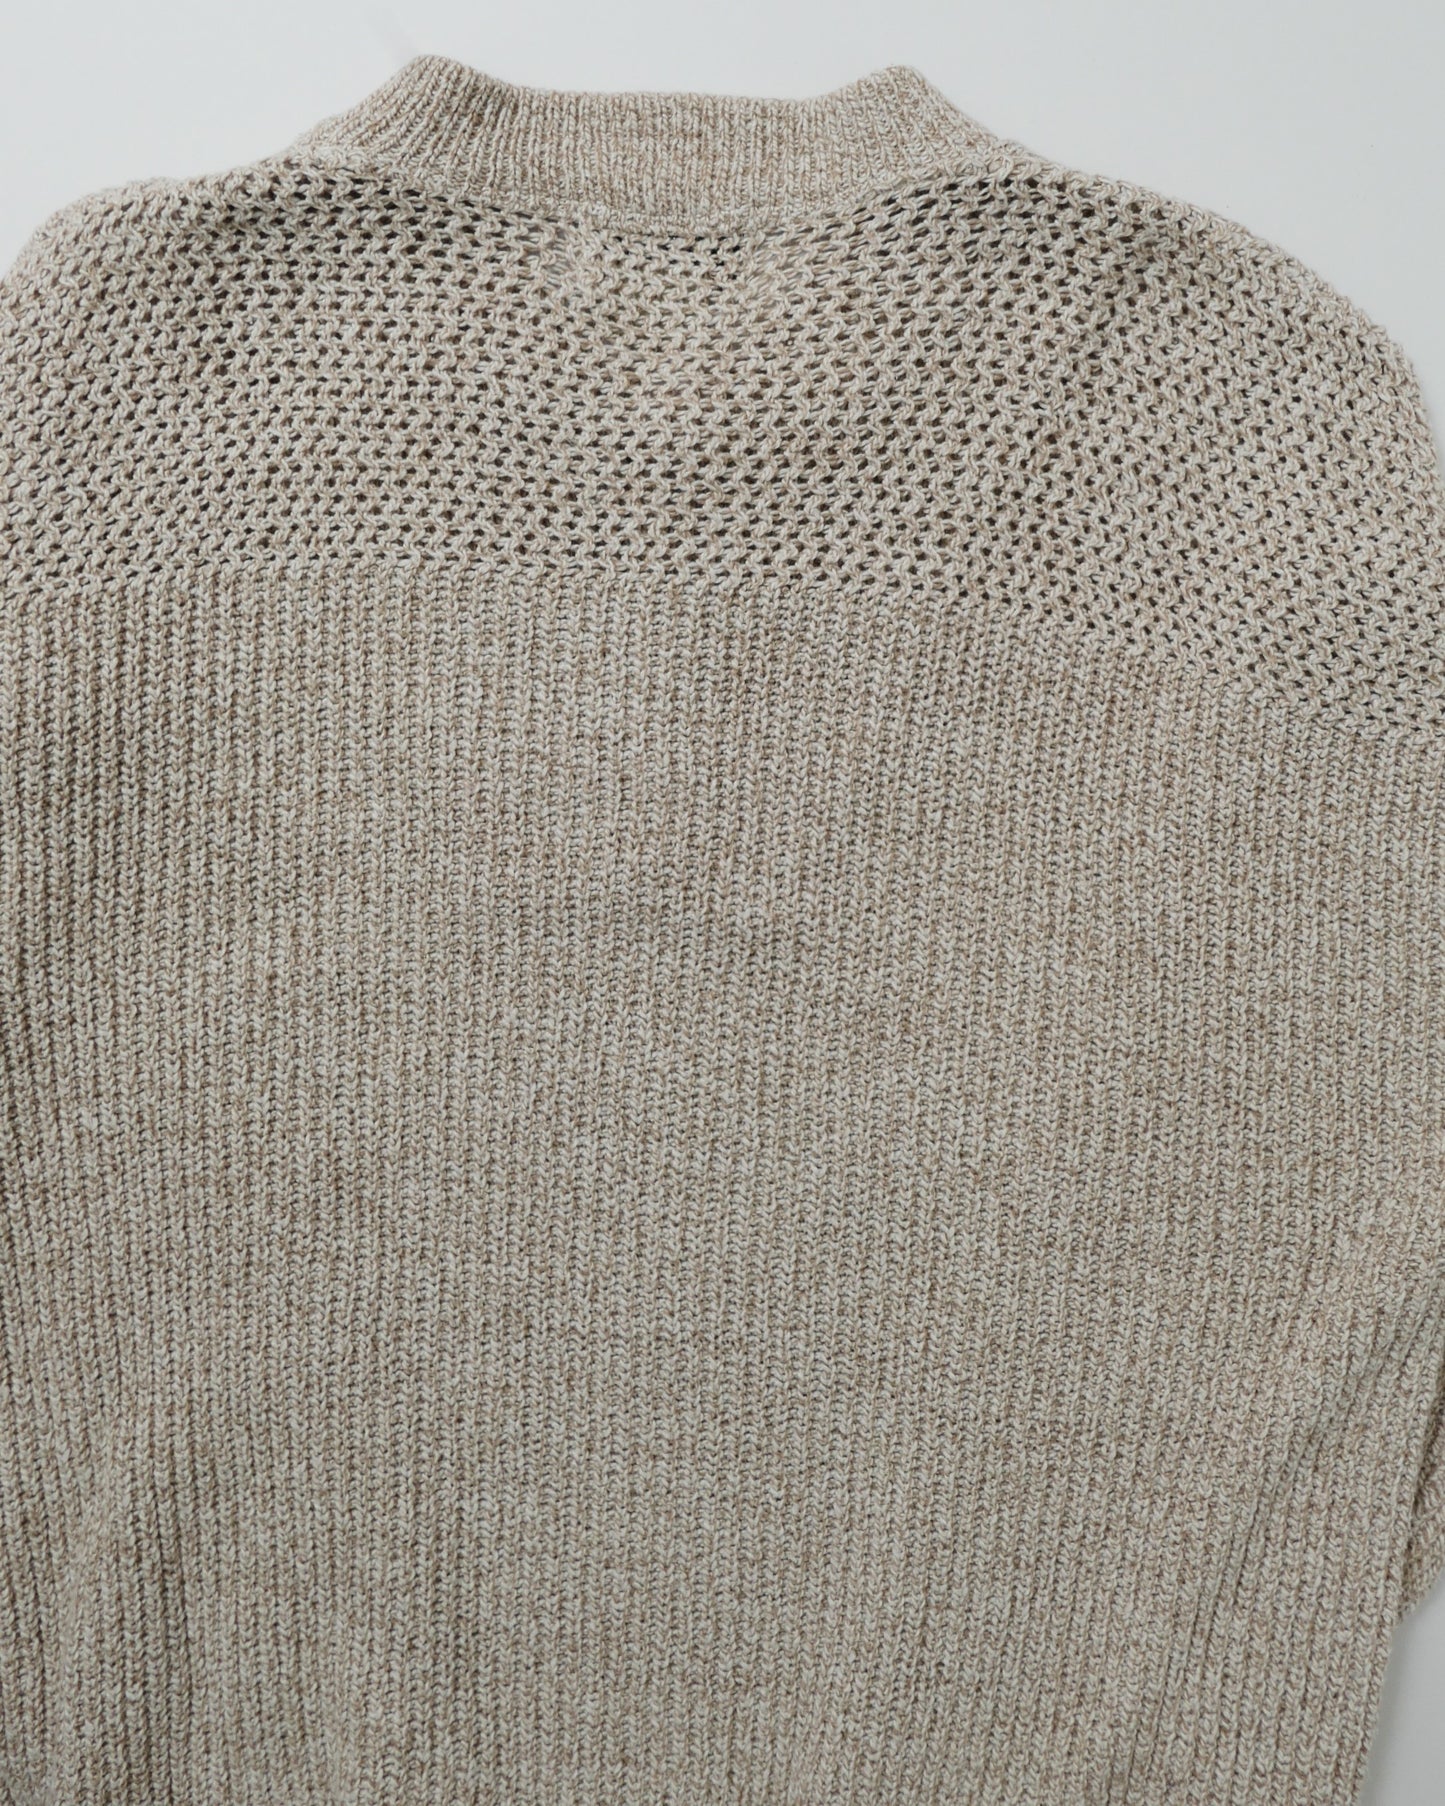 EDDIE BAUER / 90's Henry Neck Cotton Knit "Made in USA" -M-